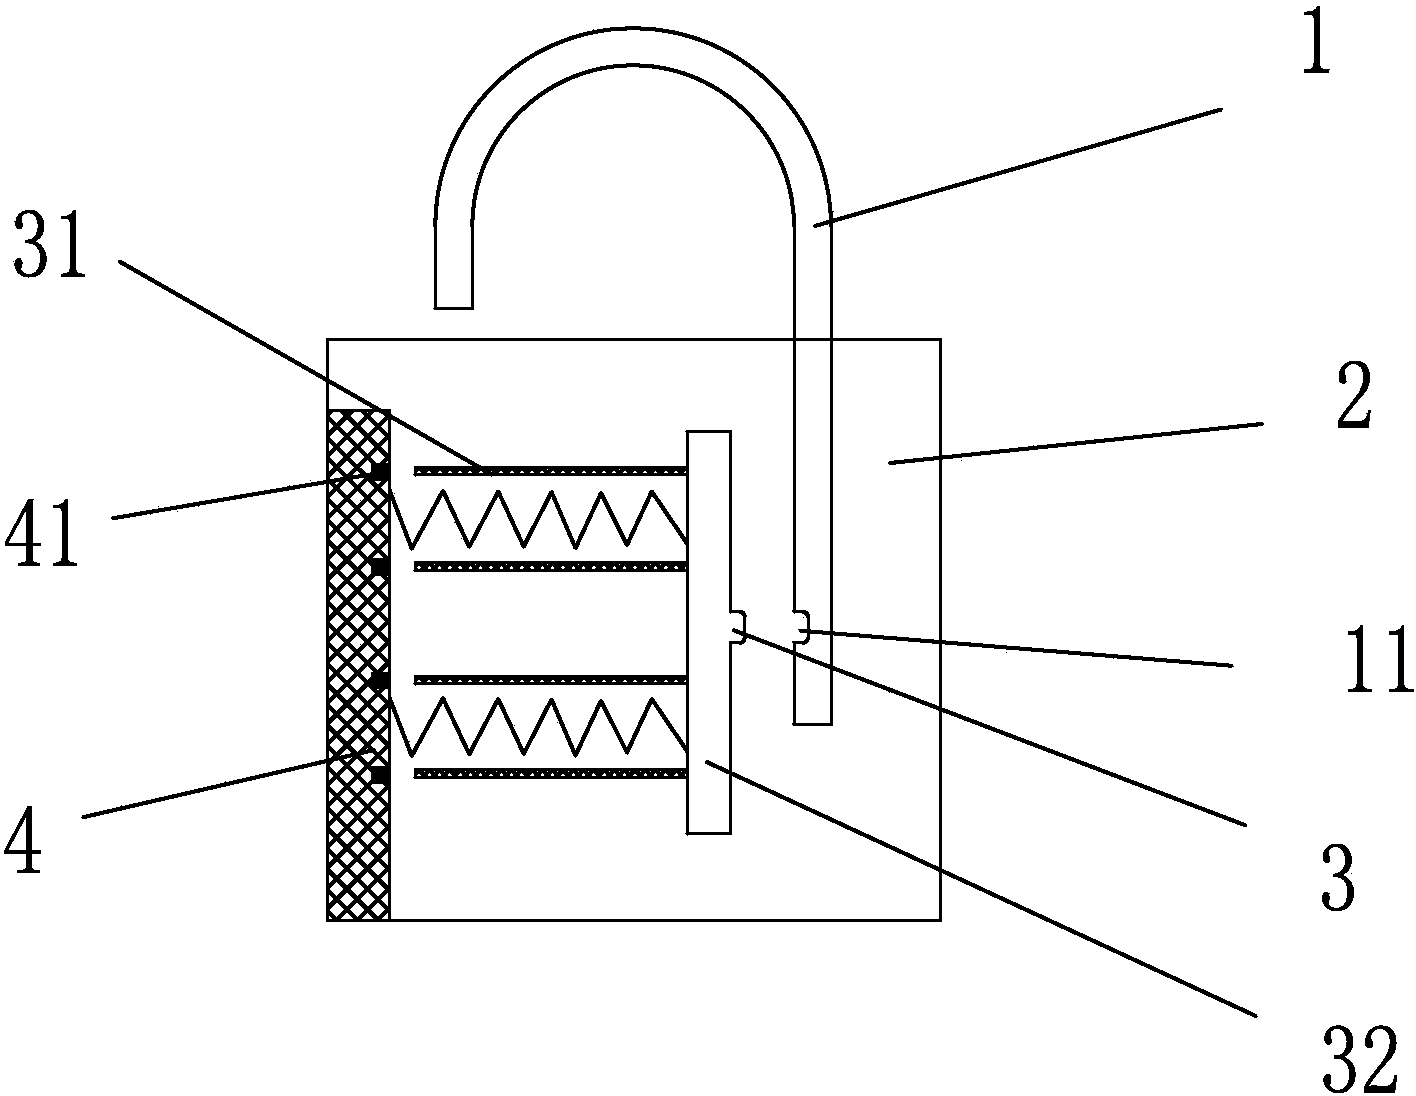 Magnetic strip padlock